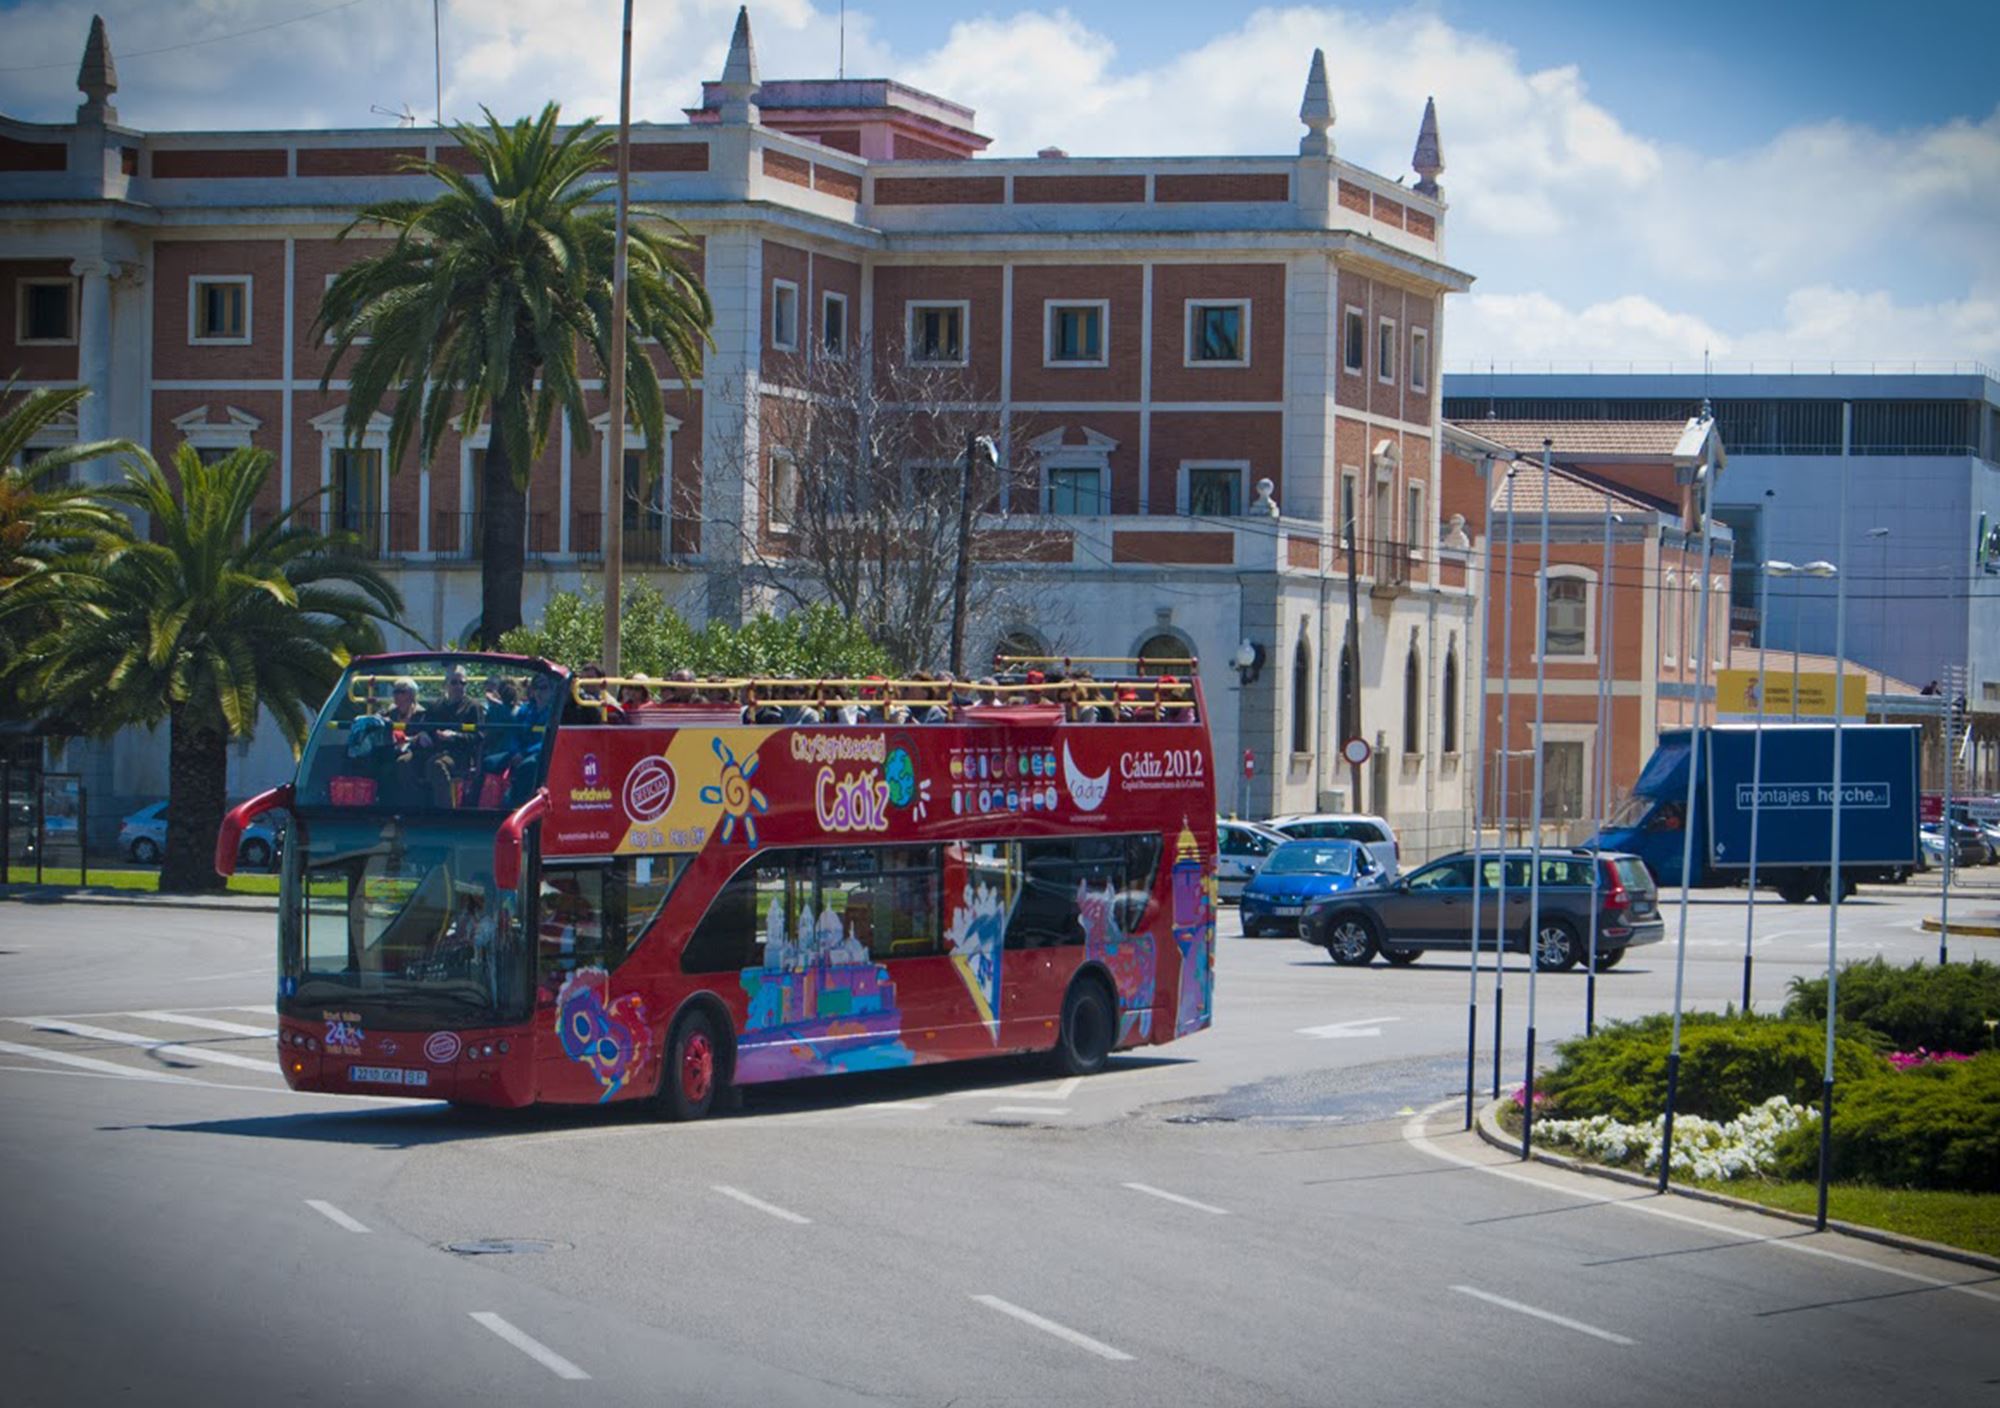 kaufen tickets besucht Touren Fahrkarte karte City Sightseeing Cadiz